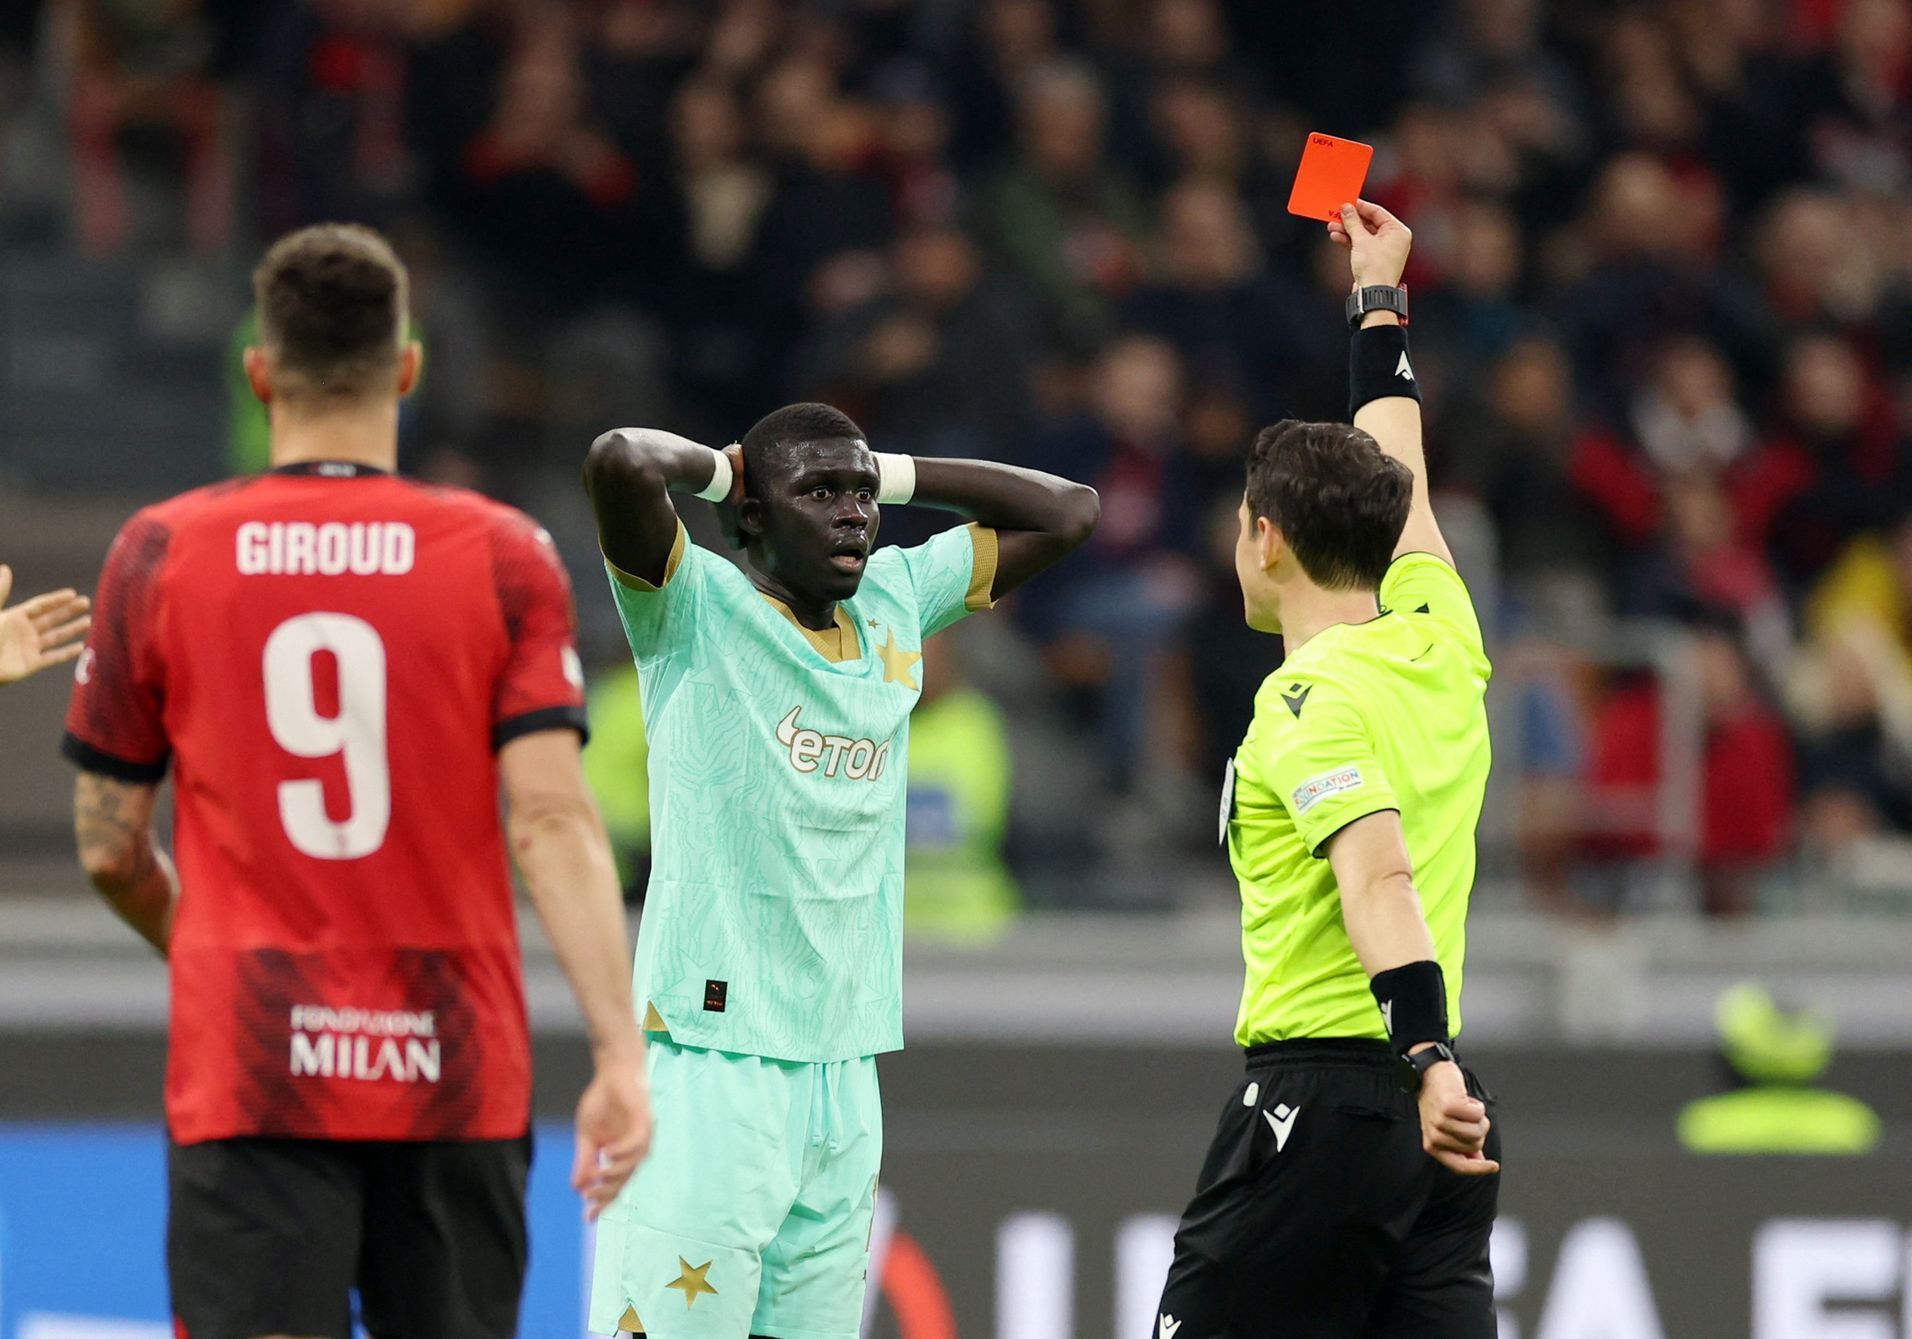 EL, AC Milán - Slavia: El Hadji Malick Diouf dostává červenou kartu